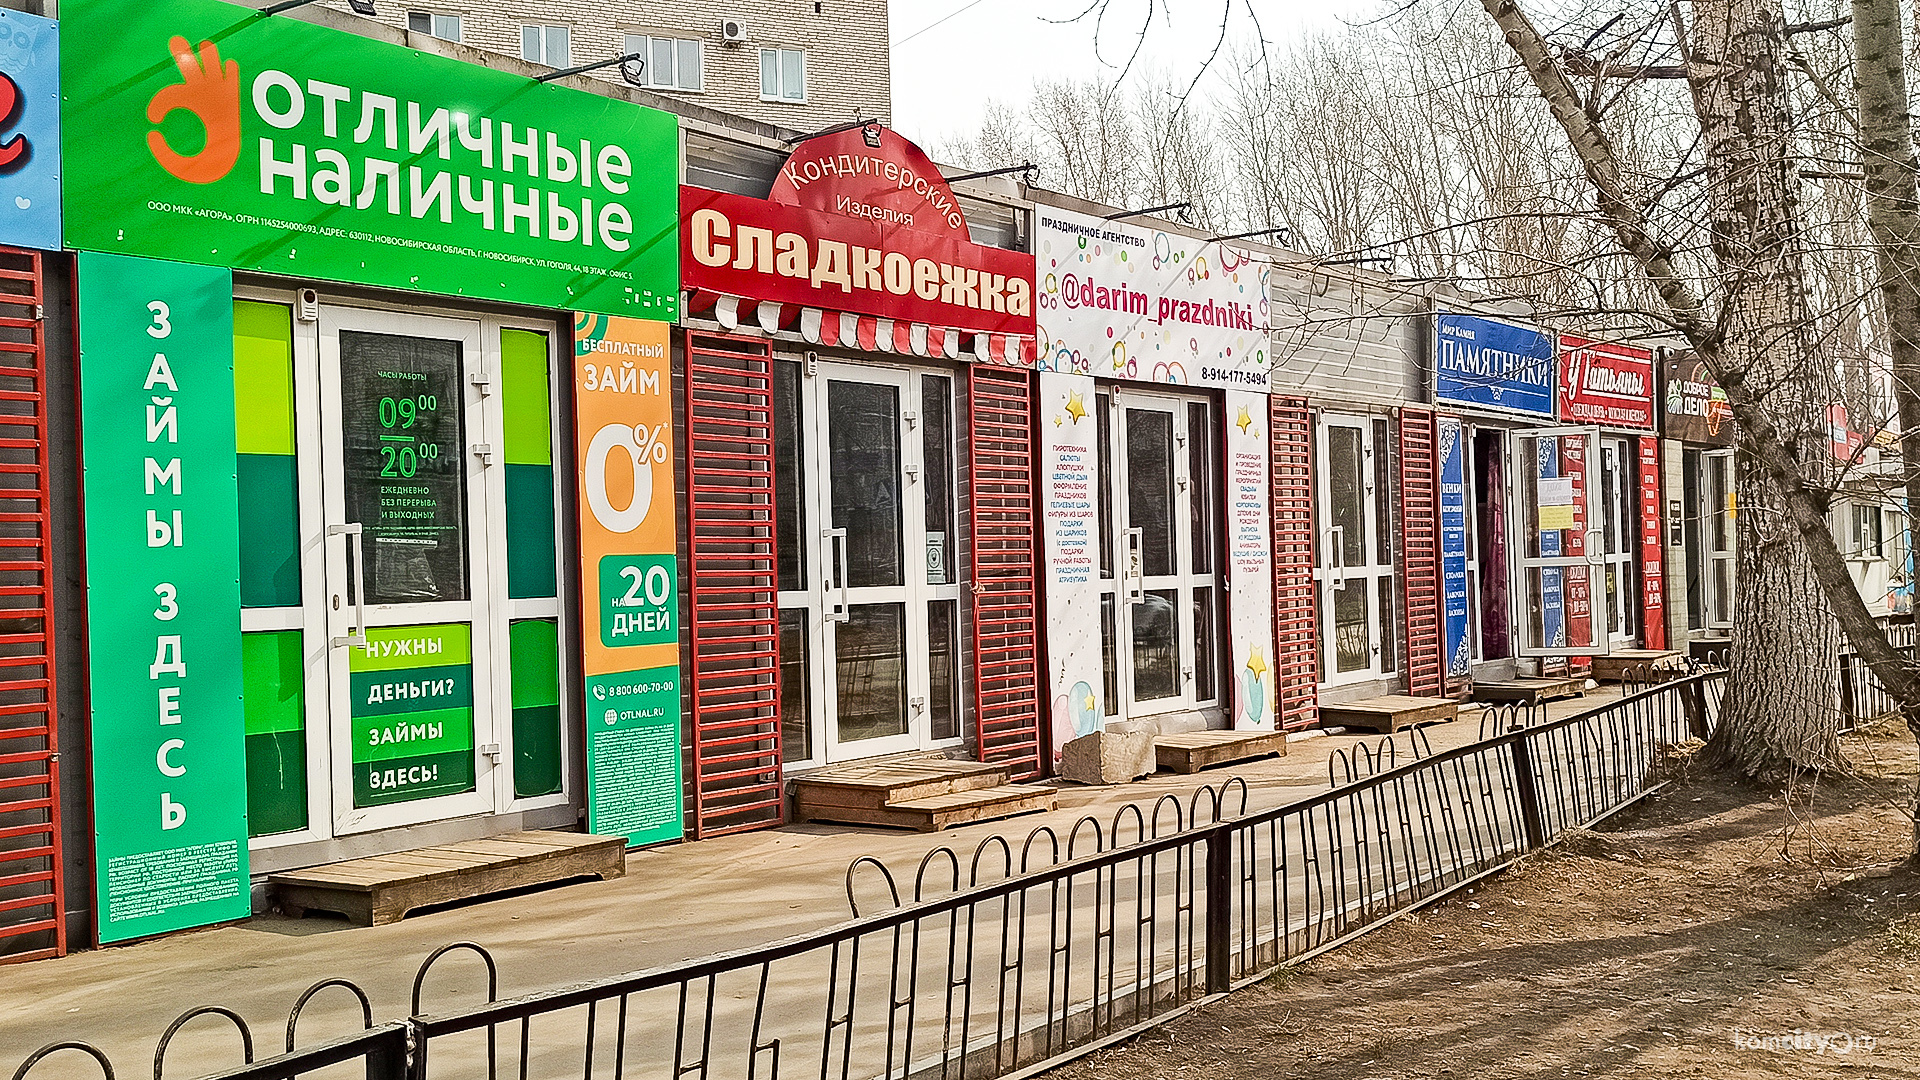 Займы 24 часа в Комсомольске на Амуре на кредитную карту